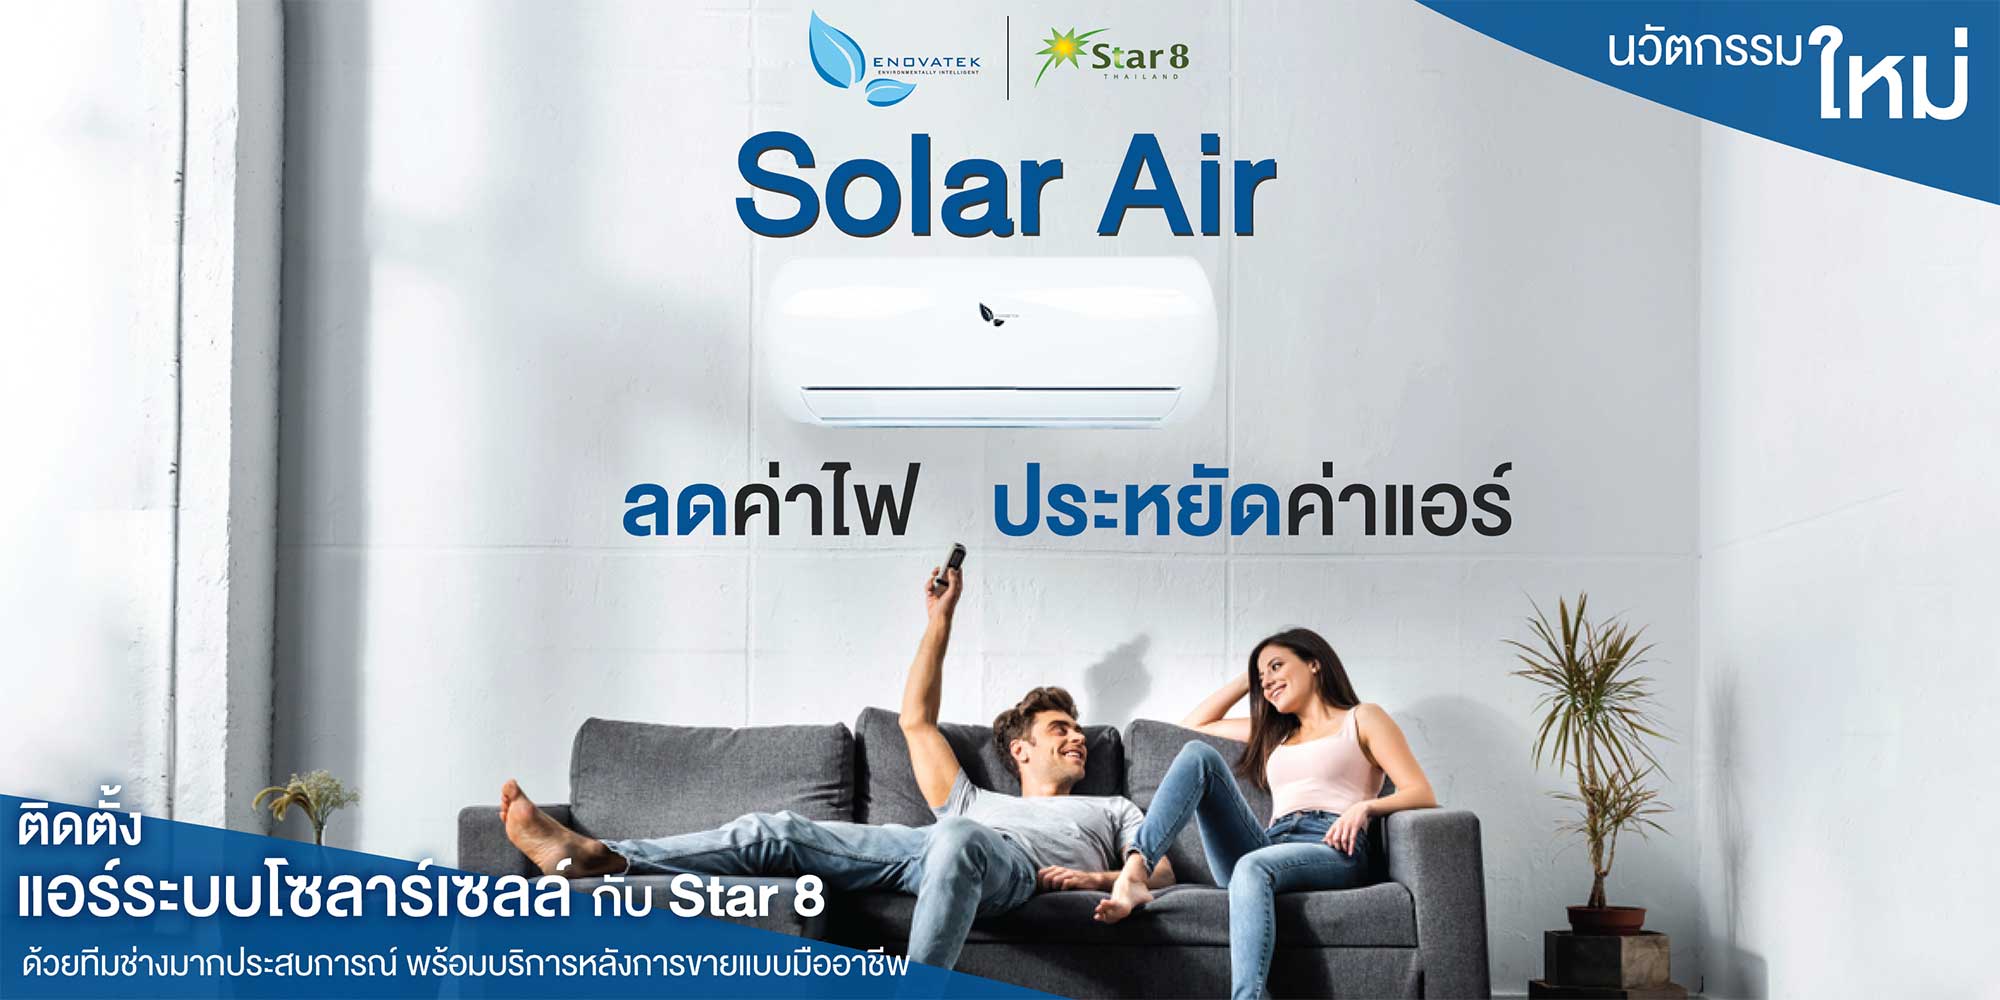 (c) Star8thailand.com